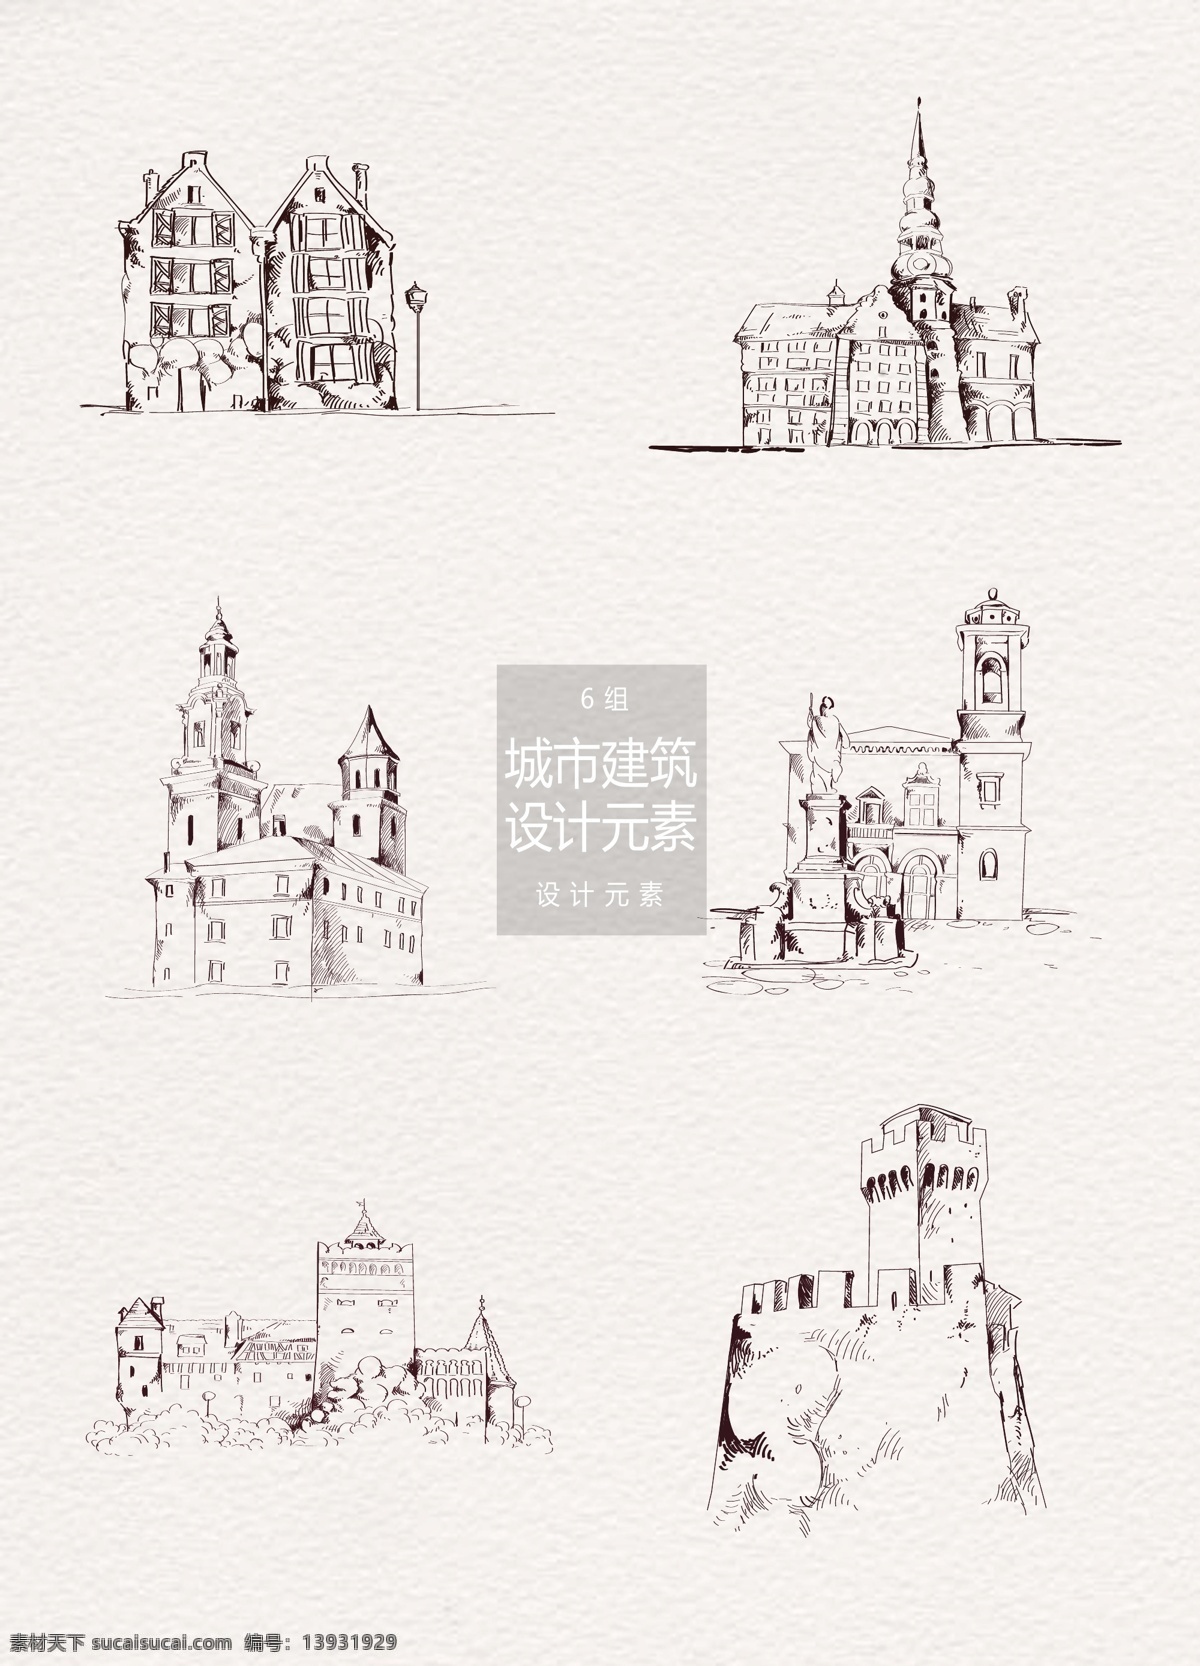 手绘 旧式 城市 建筑 插画 元素 城市建筑 手绘插画 城堡 手绘城市 城市插画